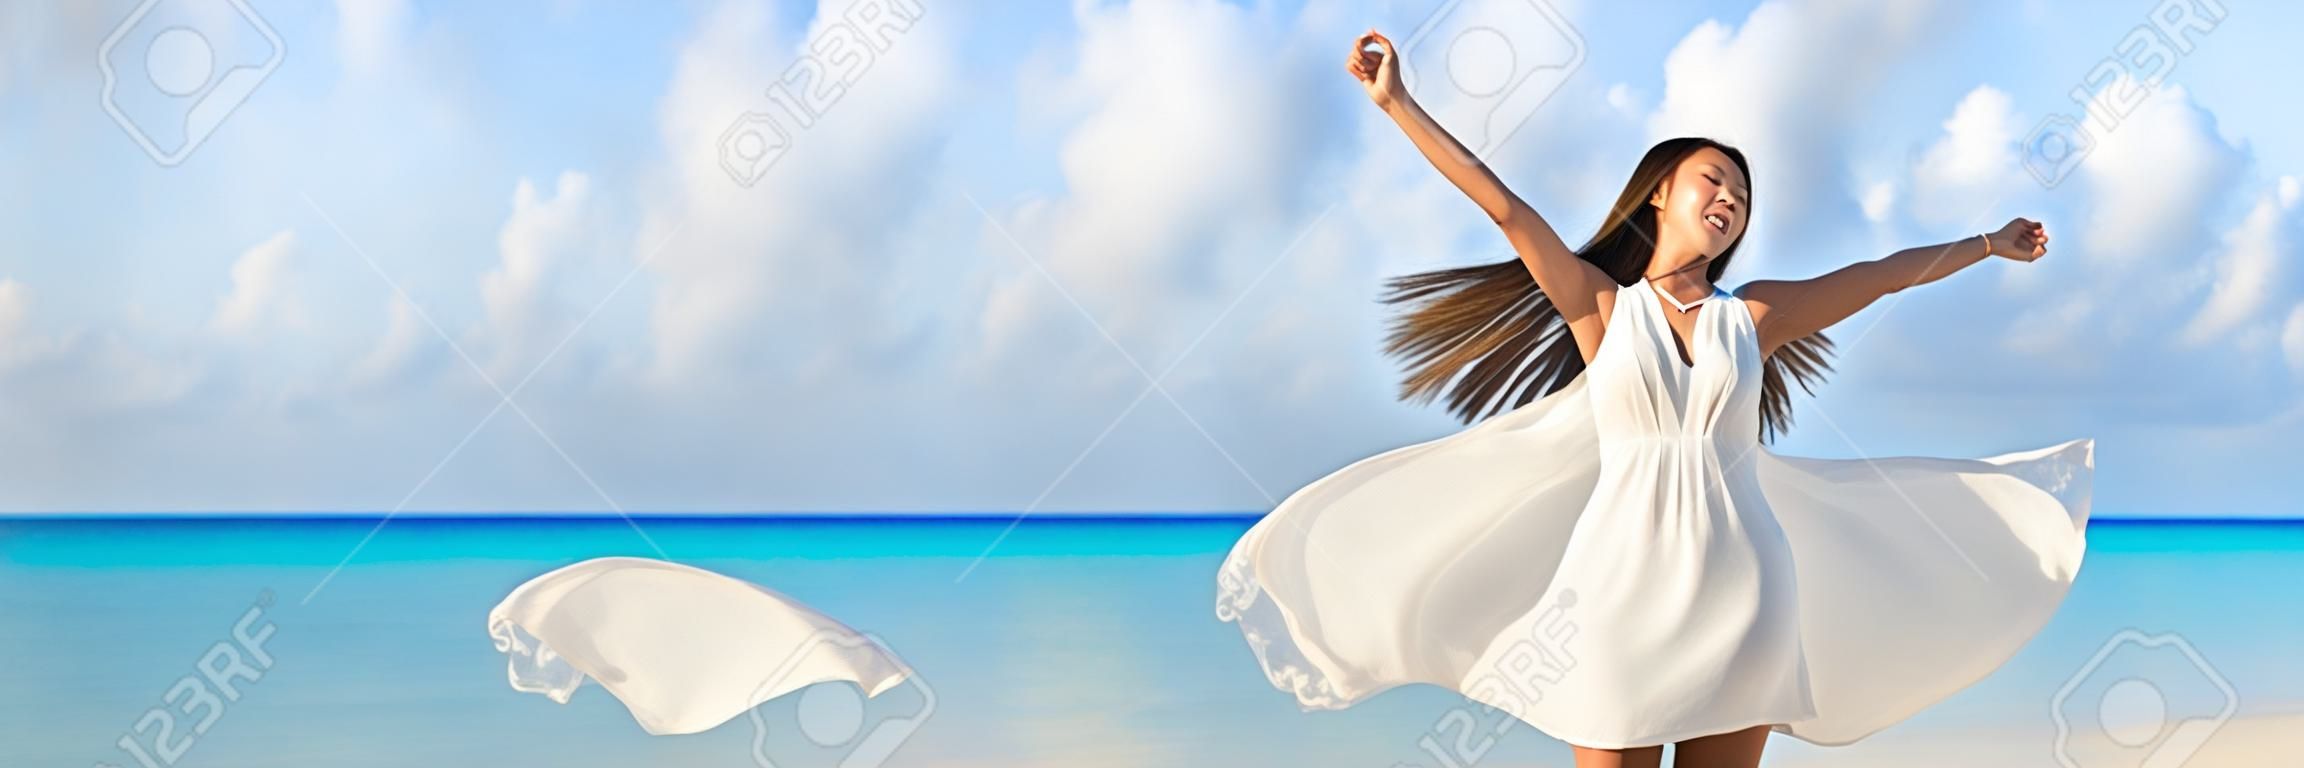 La libertad de la mujer joven con los brazos arriba extendidos hacia el cielo con el azul marino paisaje del espacio fondo de la playa de copia. Bandera del panorama. Asia chica en el baile vestido blanco sin preocupaciones en la puesta del sol.